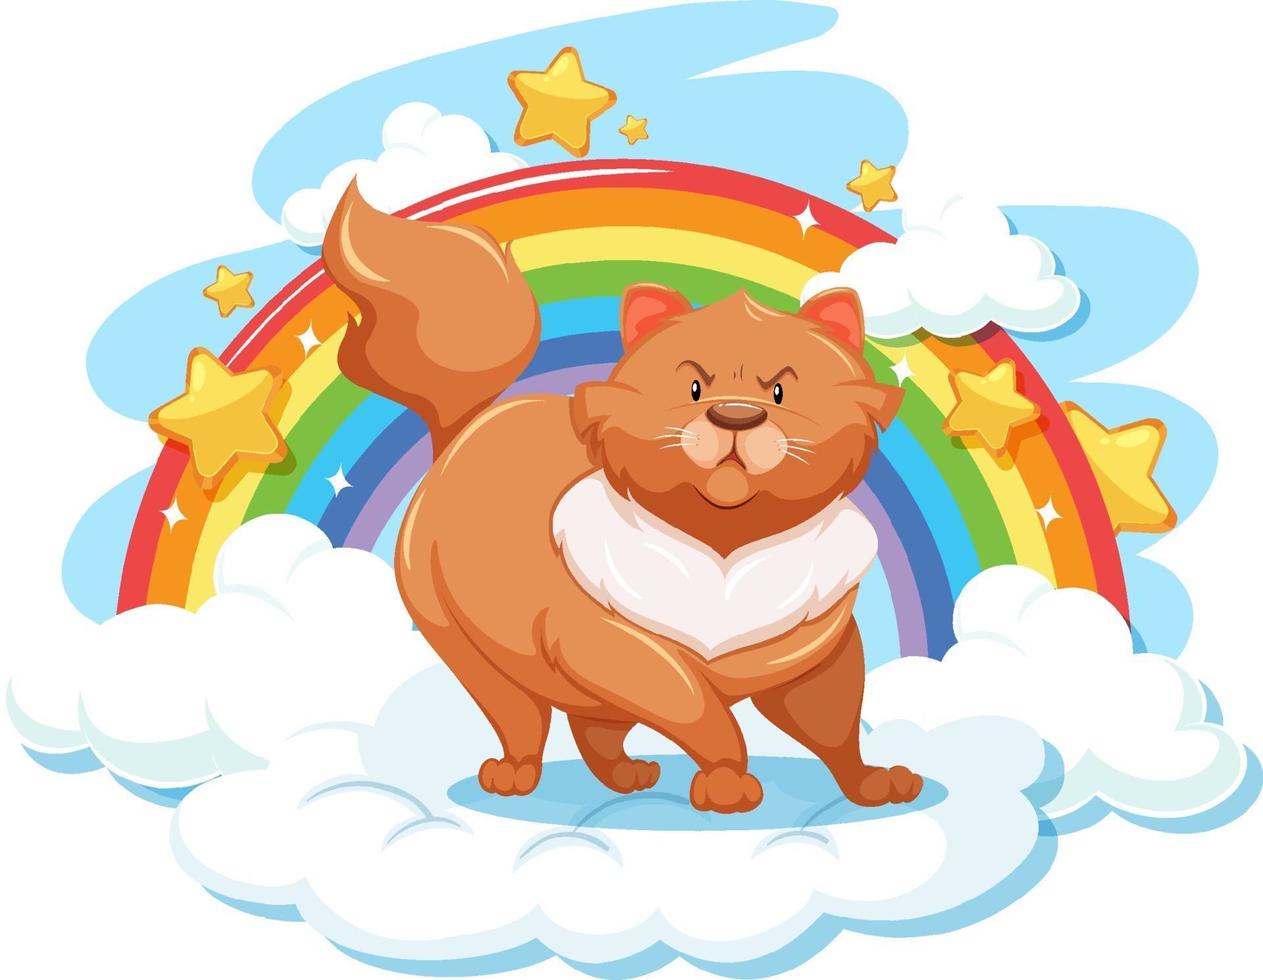 Chubby cat on the cloud with rainbow vector